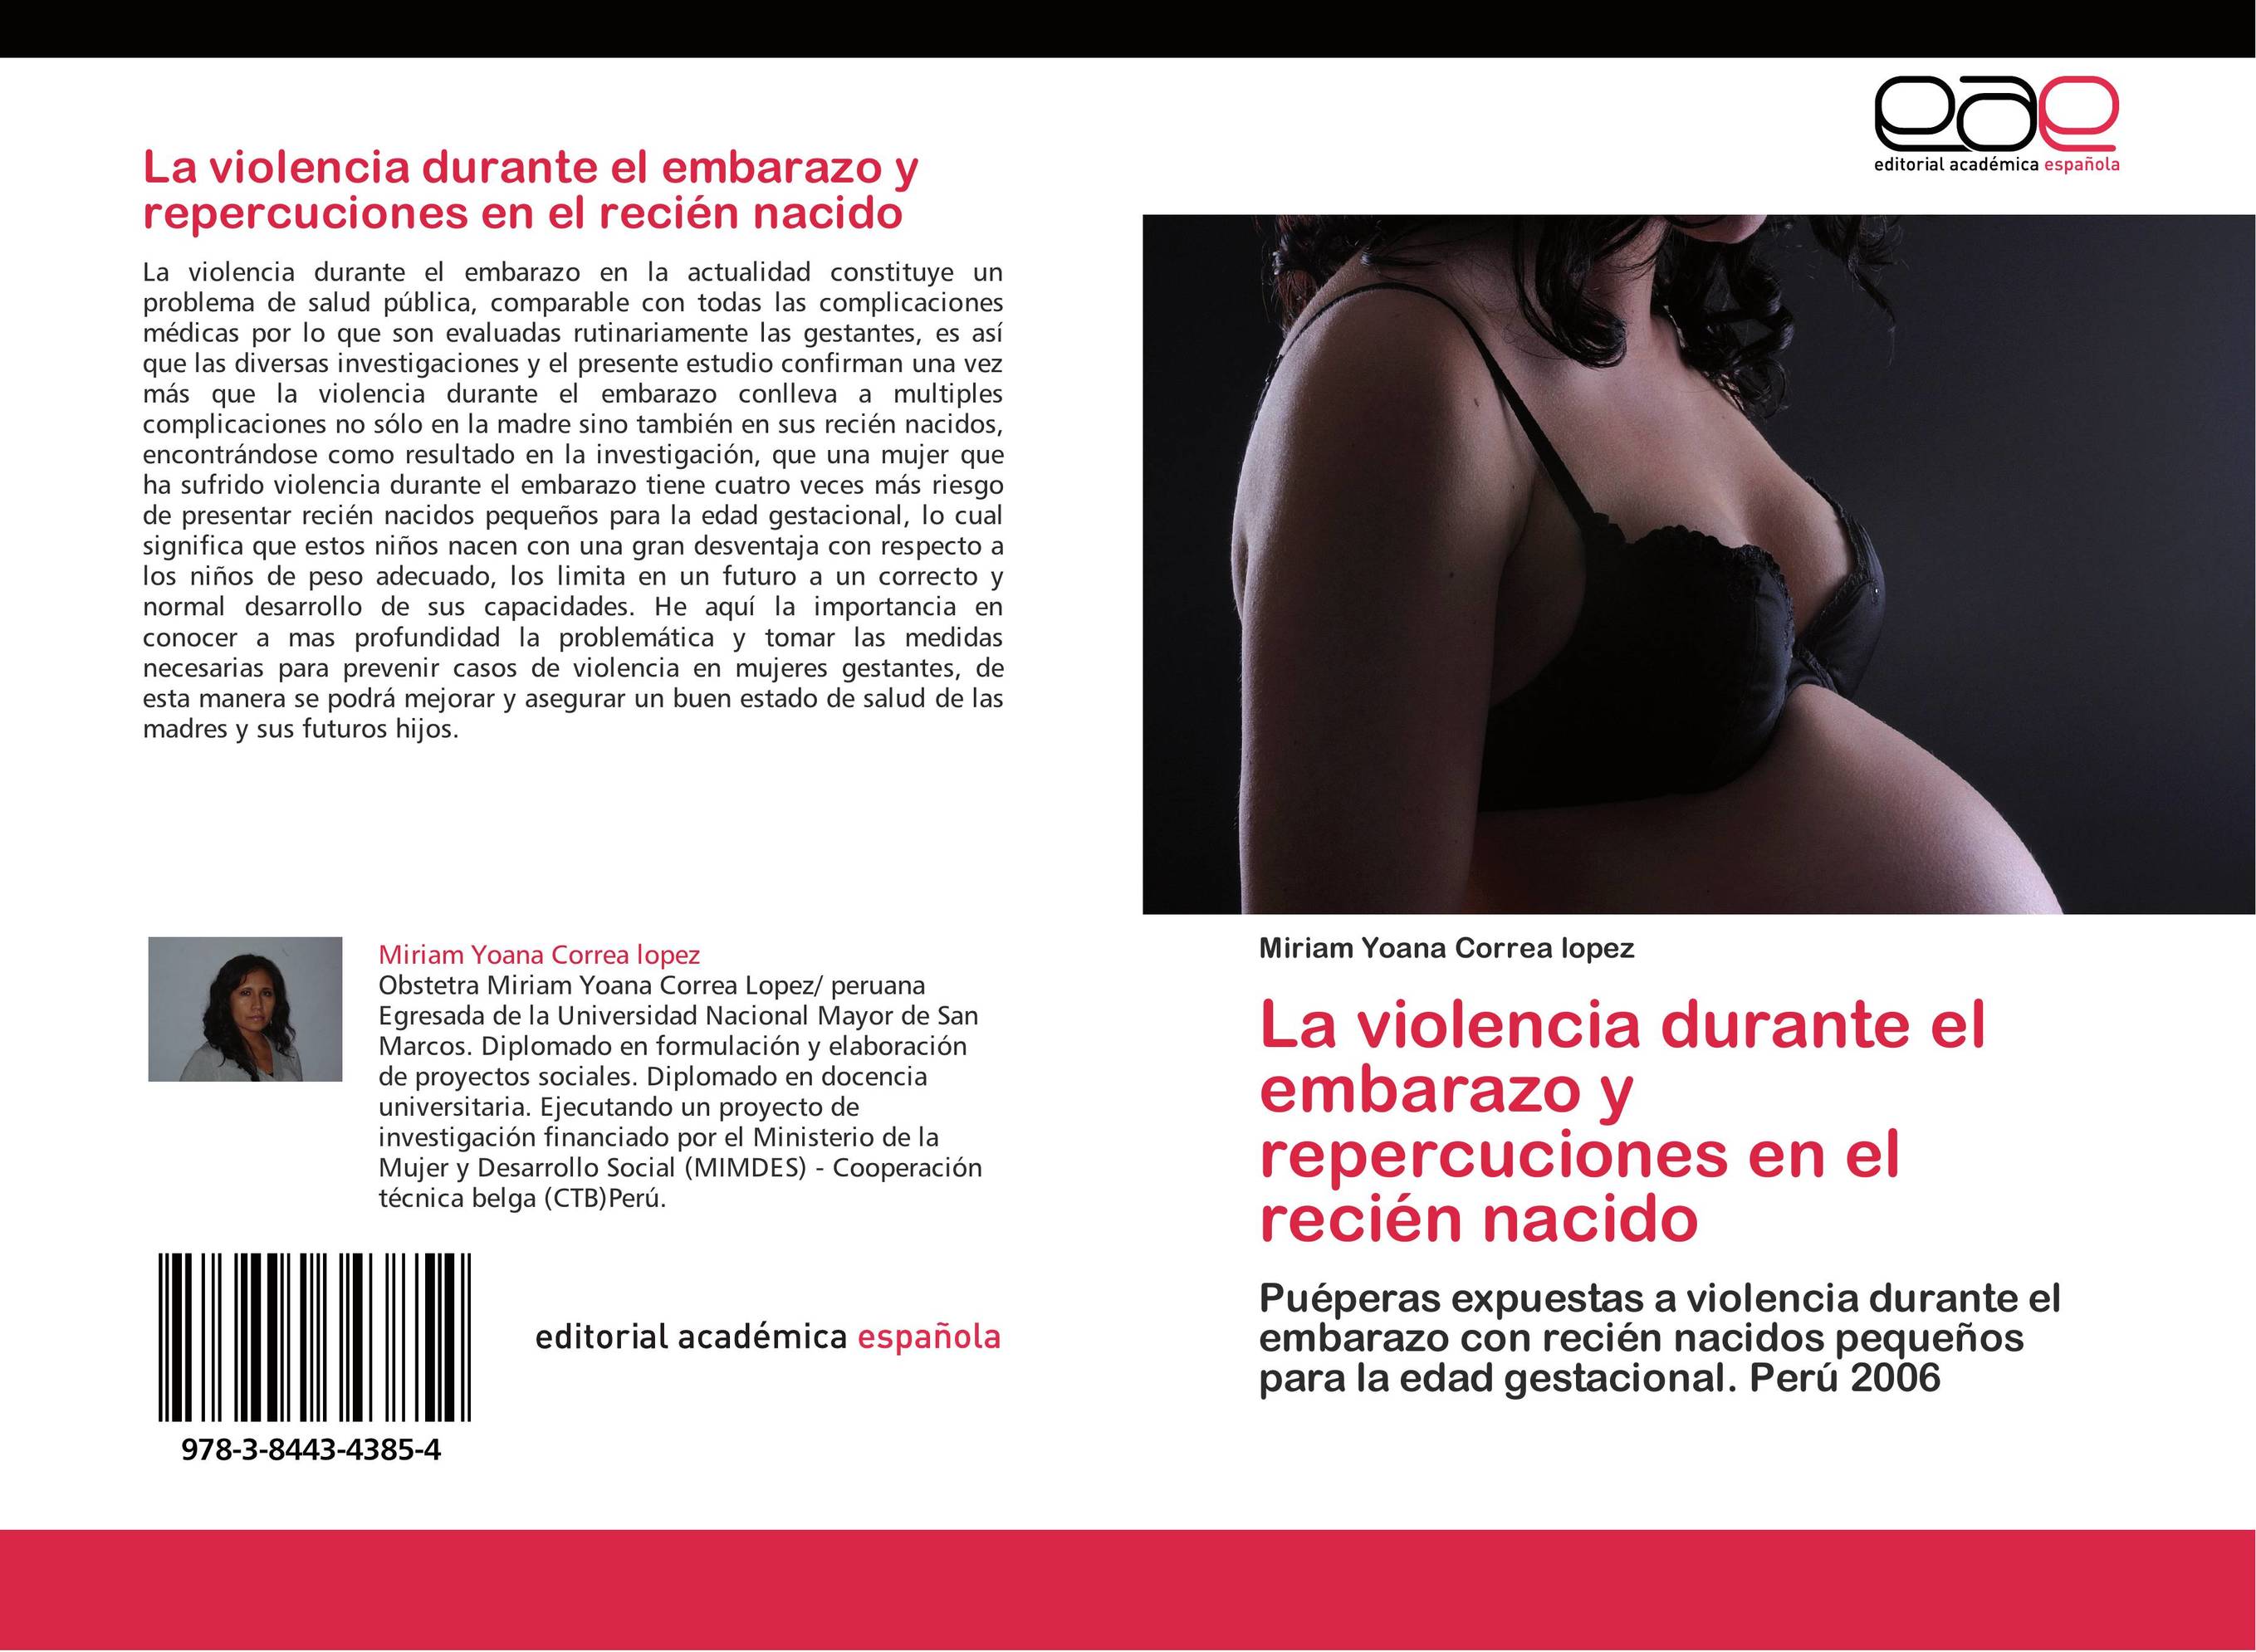 La violencia durante el embarazo y repercuciones en el recién nacido